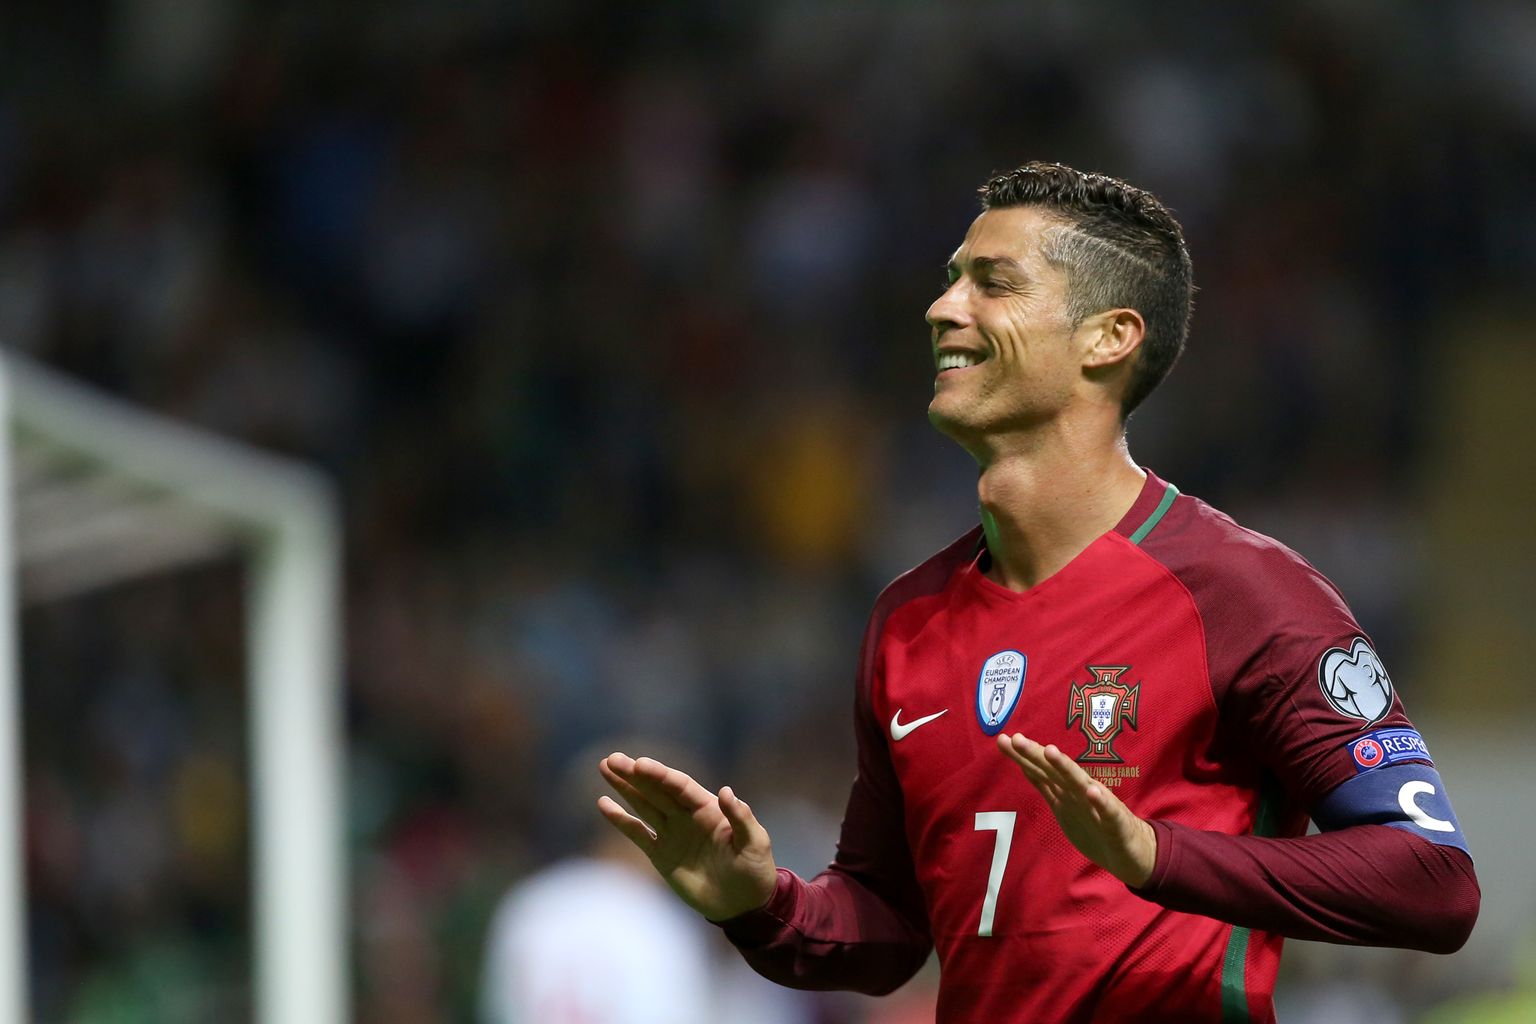 Portugali jalgpallikoondise kapten ja ründaja Cristiano Ronaldo, kellega Inglise klubi Manchester United lepingu lõpetas